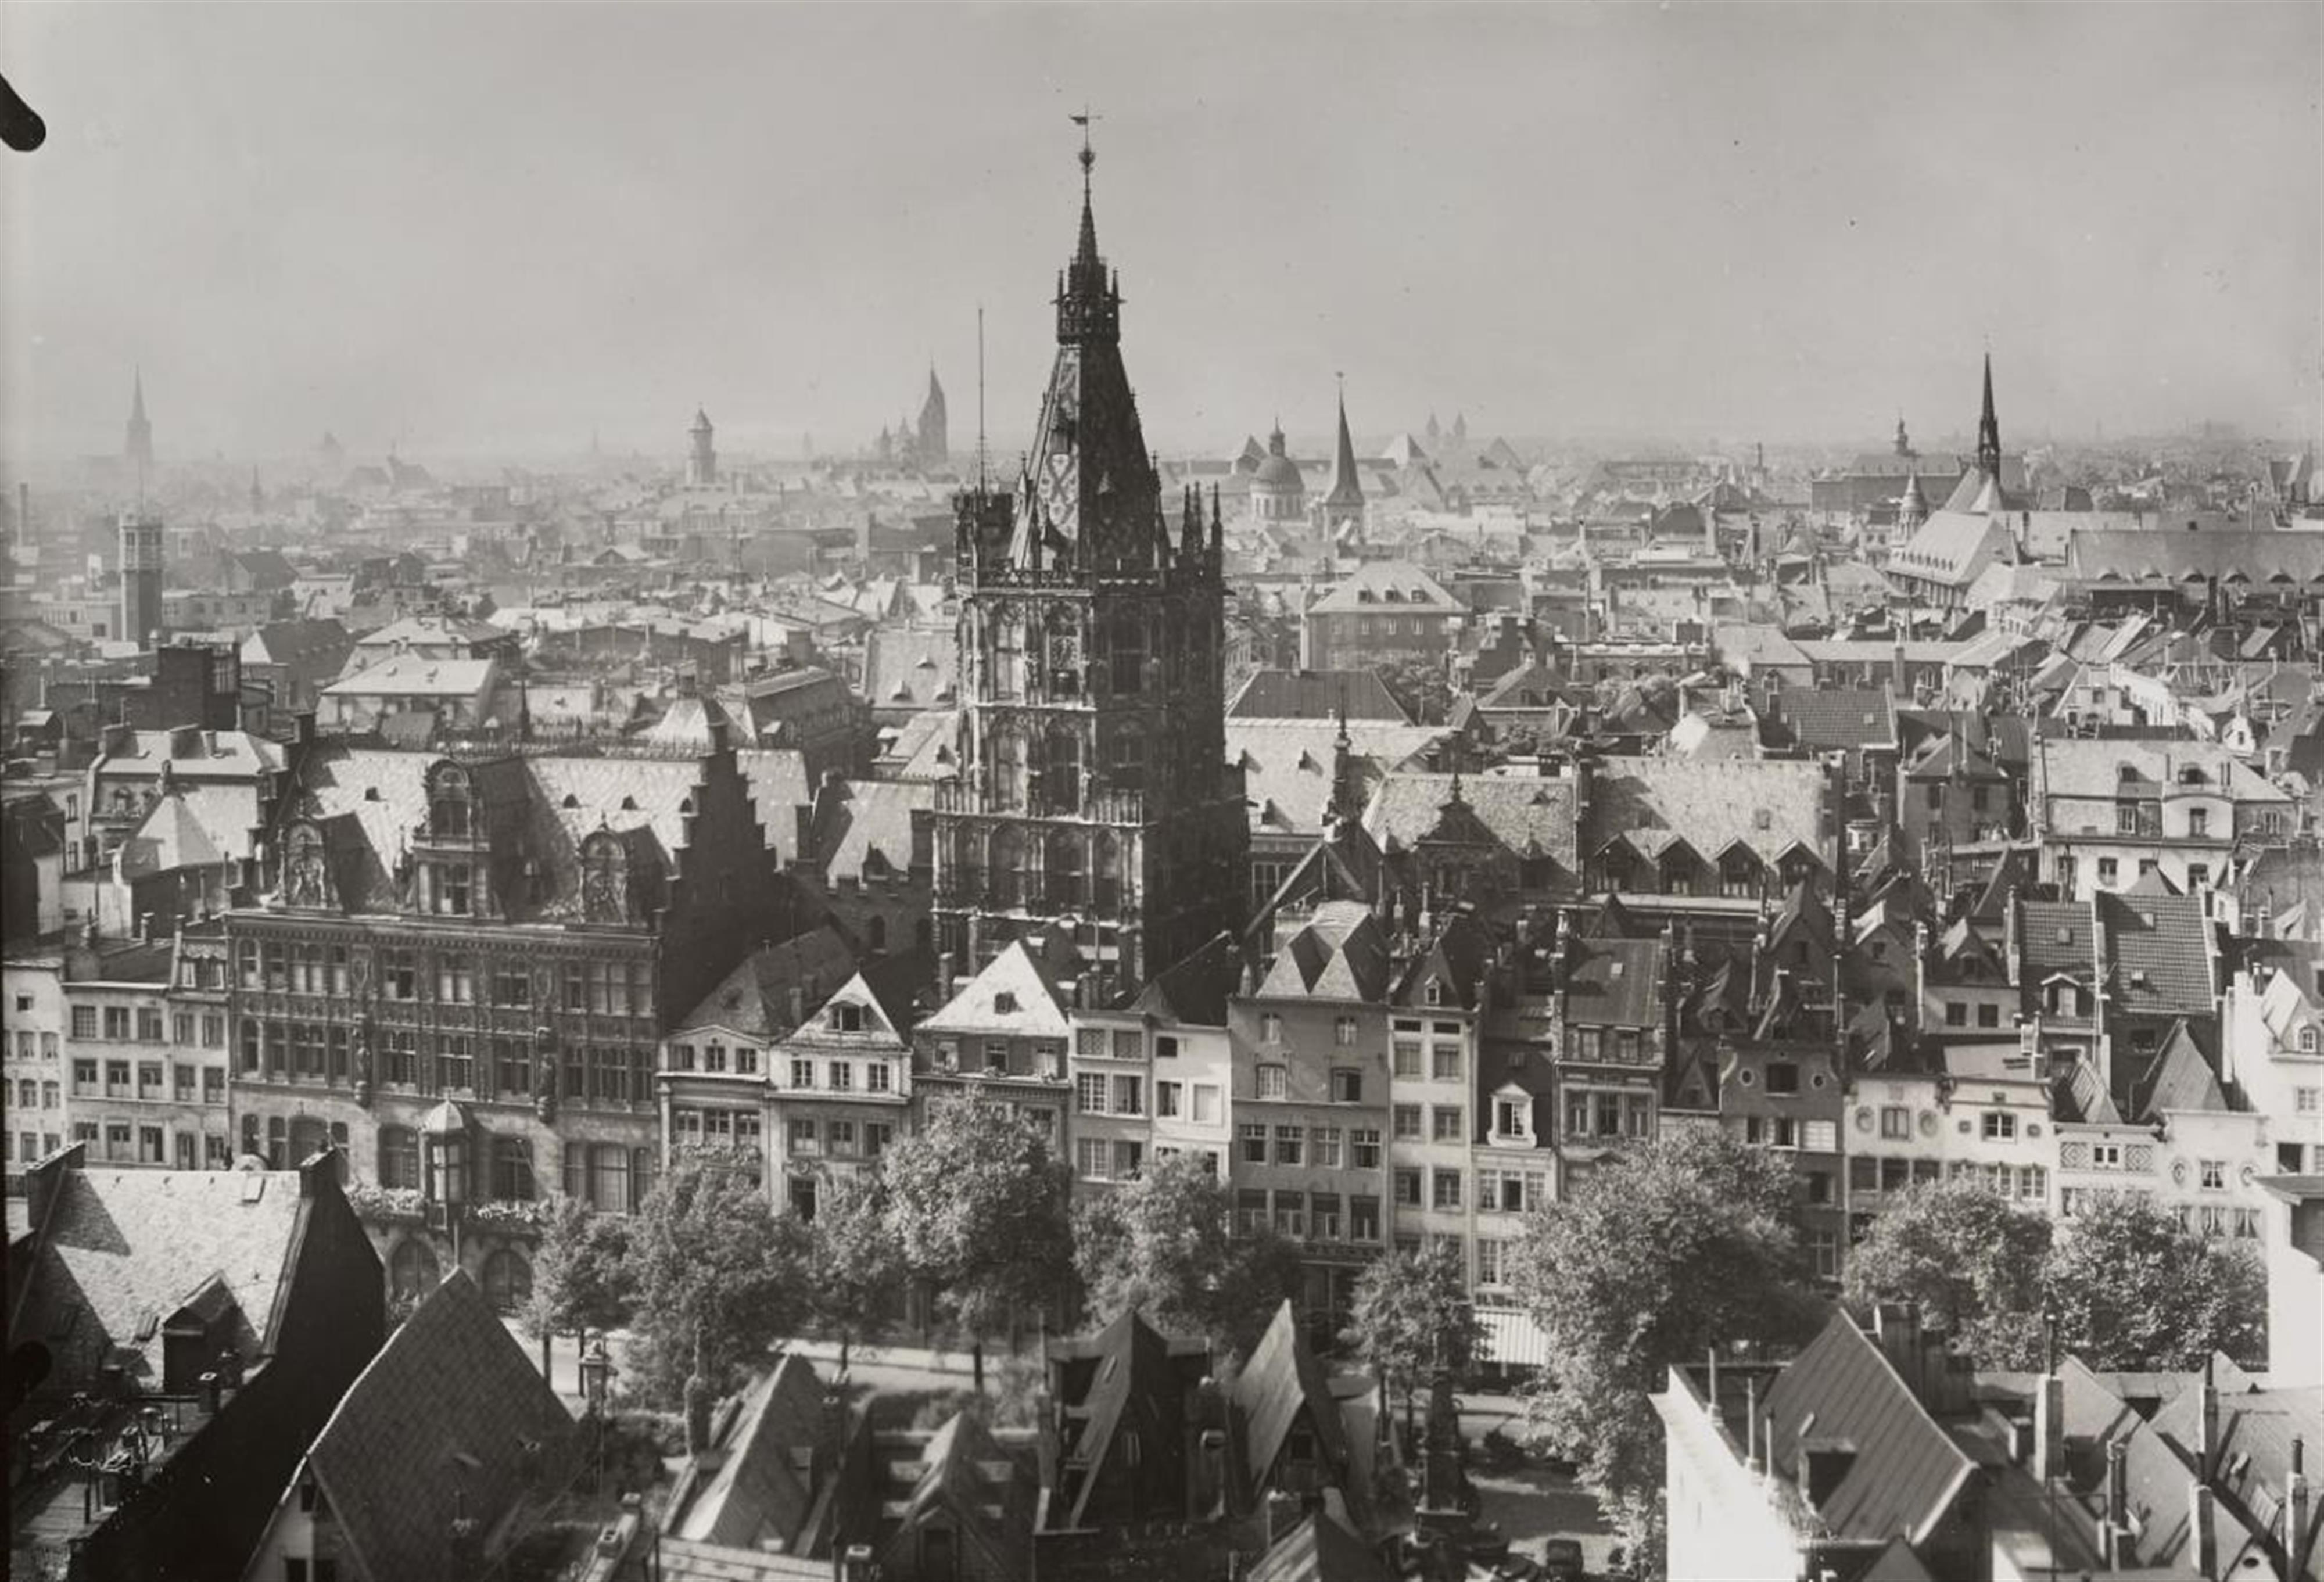 August Sander - Blick auf Rathaus und Alter Markt (View to town hall and Alter Markt) - image-1